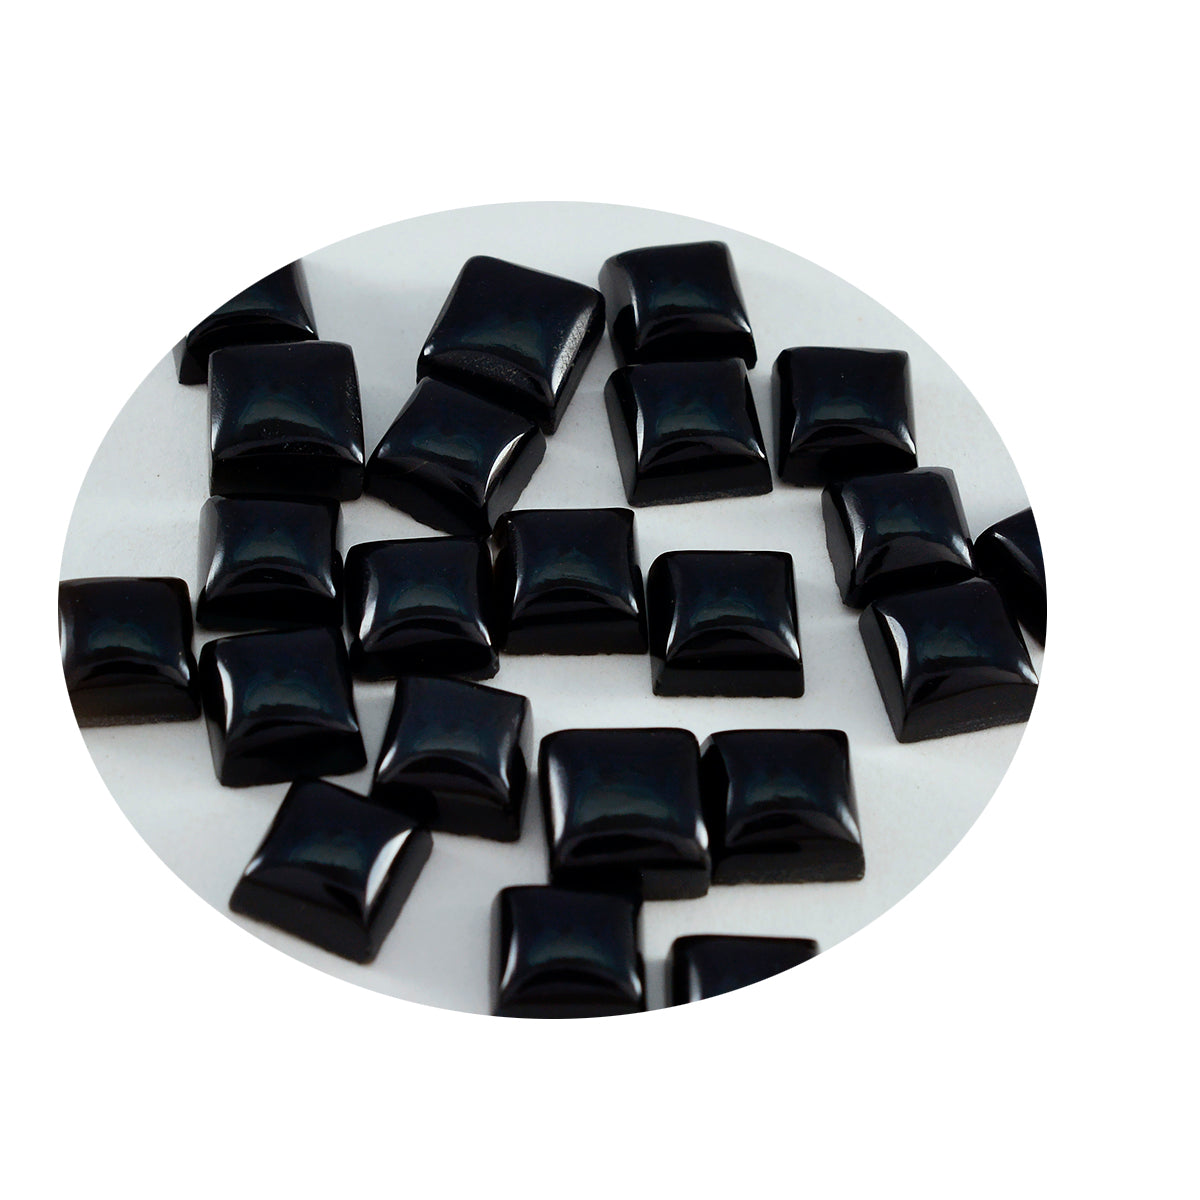 riyogems 1st svart onyx cabochon 6x6 mm fyrkantig form härlig kvalitetsädelsten